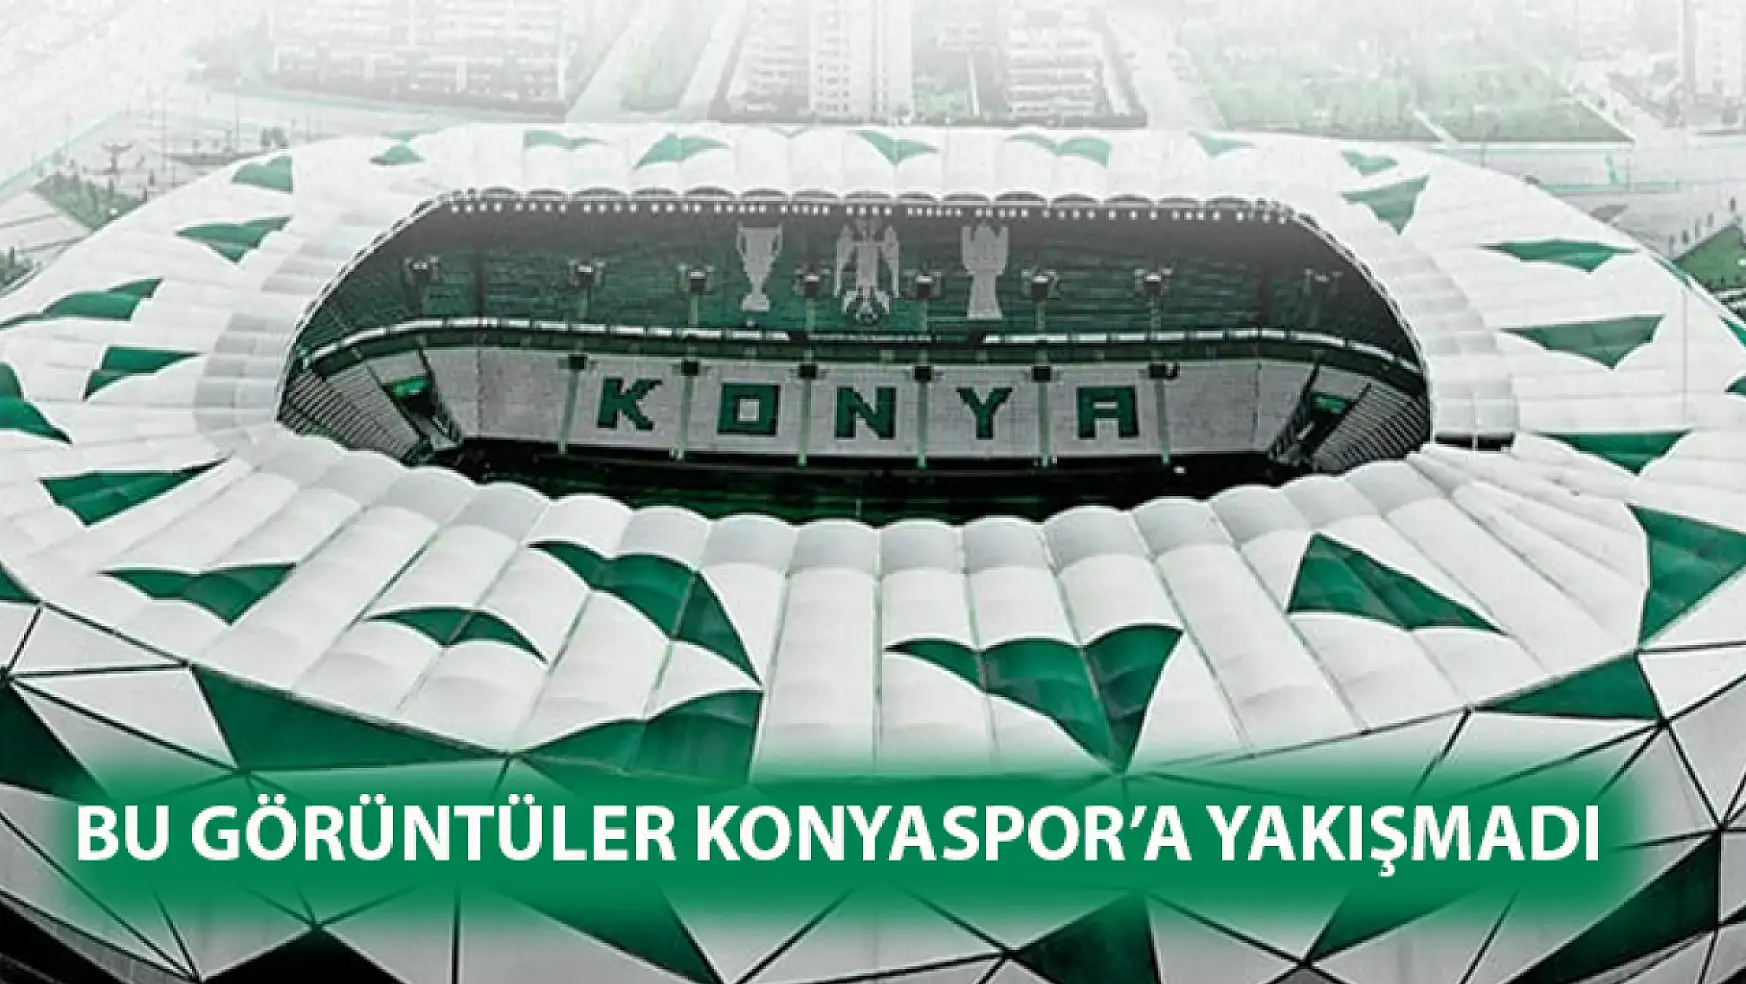 Bu görüntüler Konyaspor'a yakışmadı